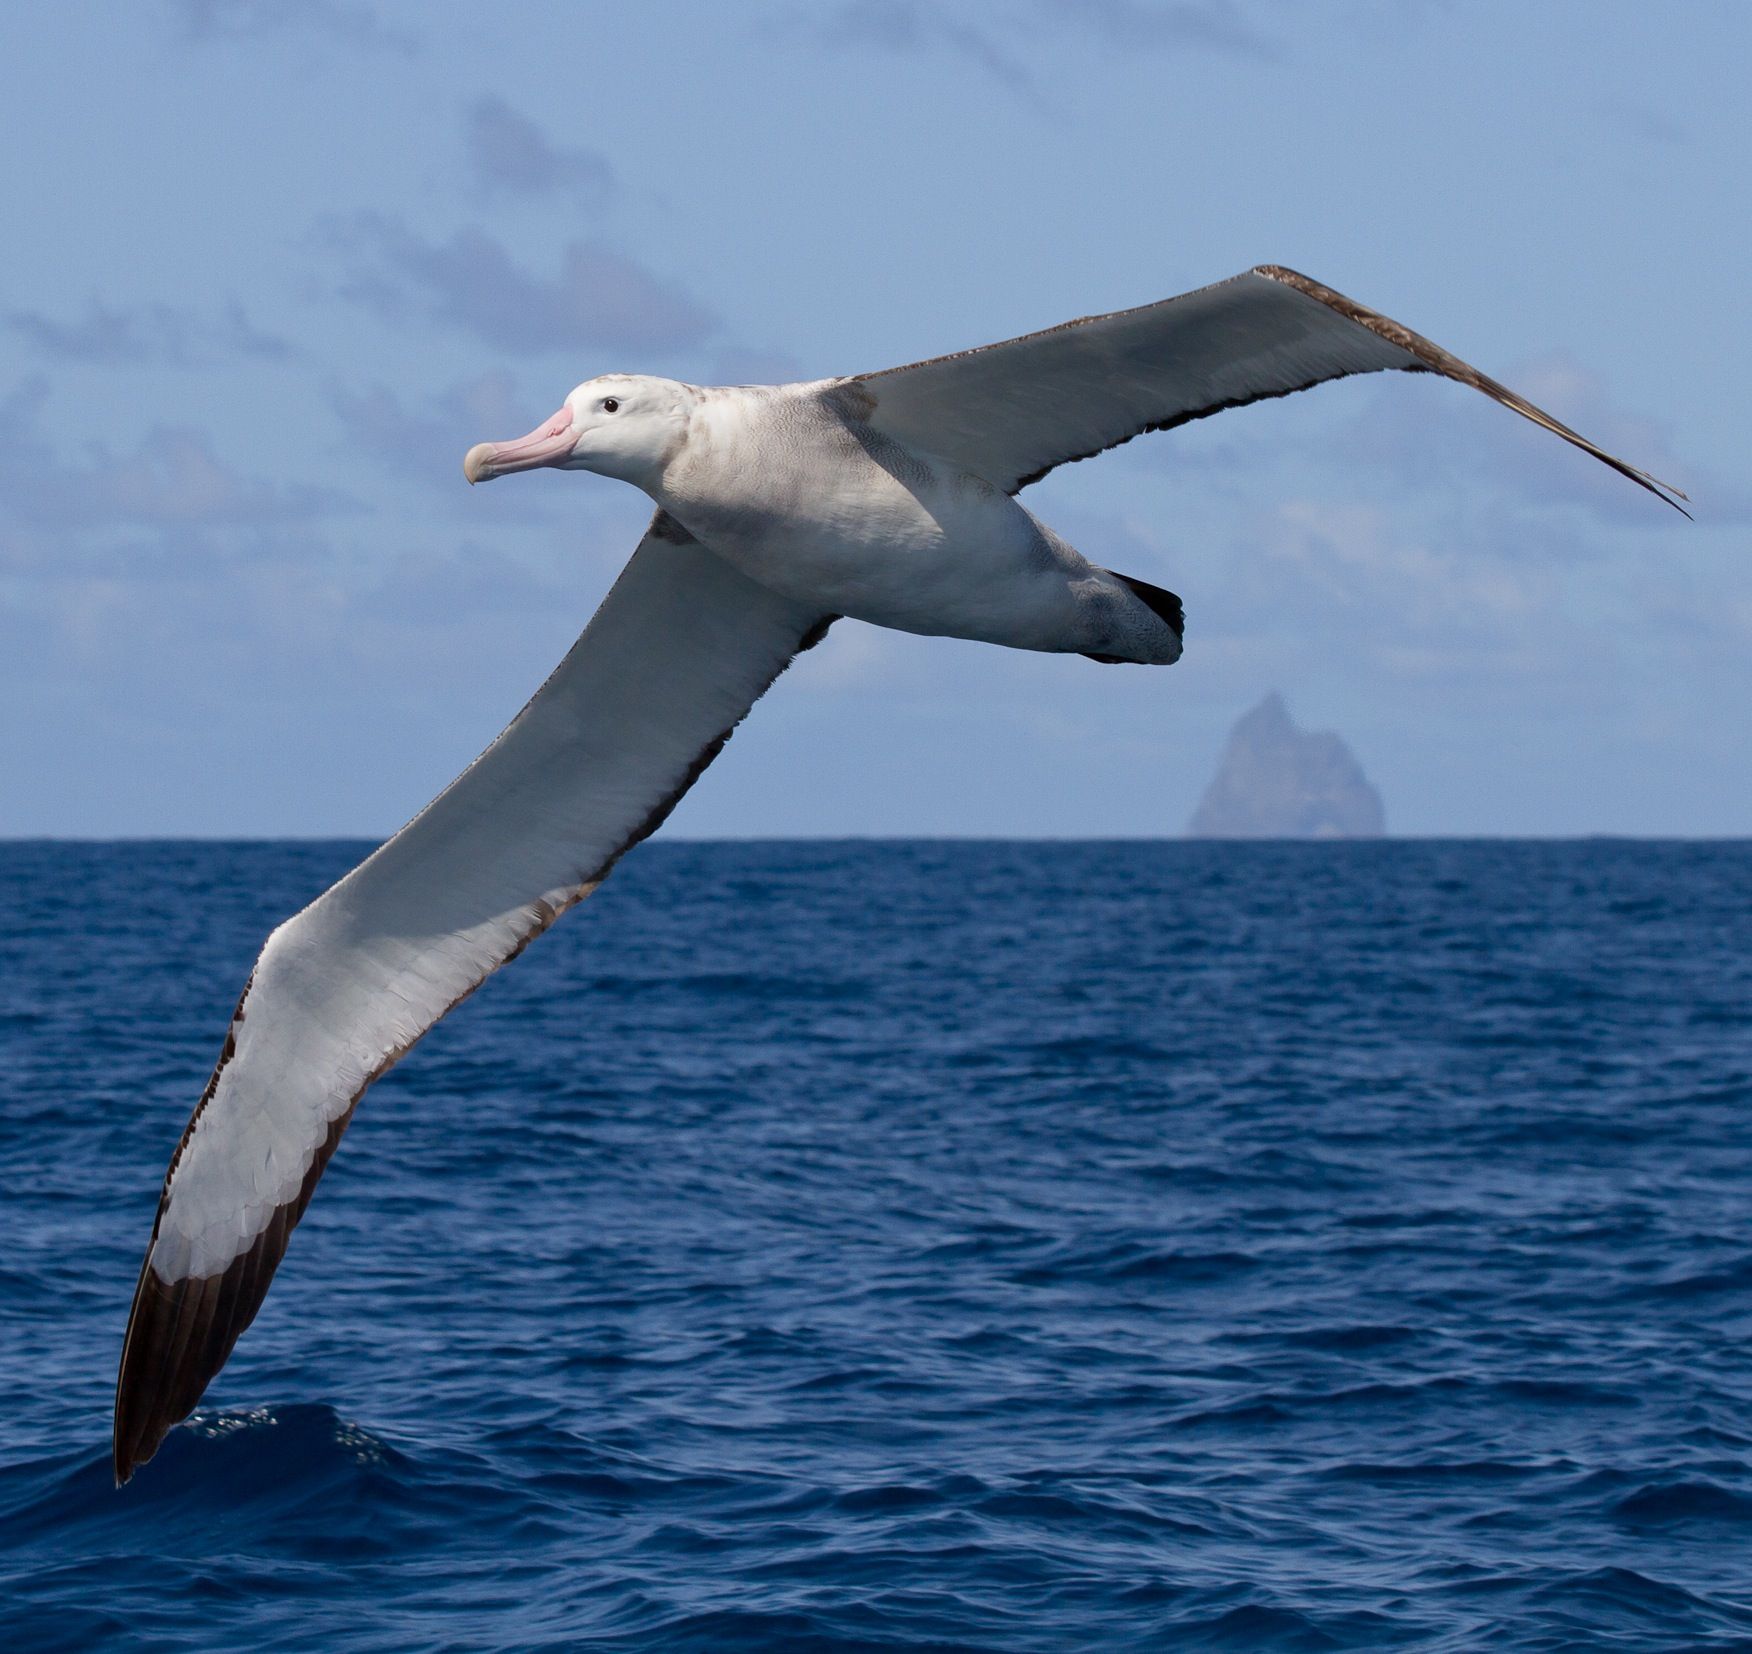 Буревестник птица размер. Странствующий Альбатрос размах крыльев. Странствующий Альбатрос в Антарктиде. Атлантический Альбатрос. Альбатрос размах крыльев 3 метра.